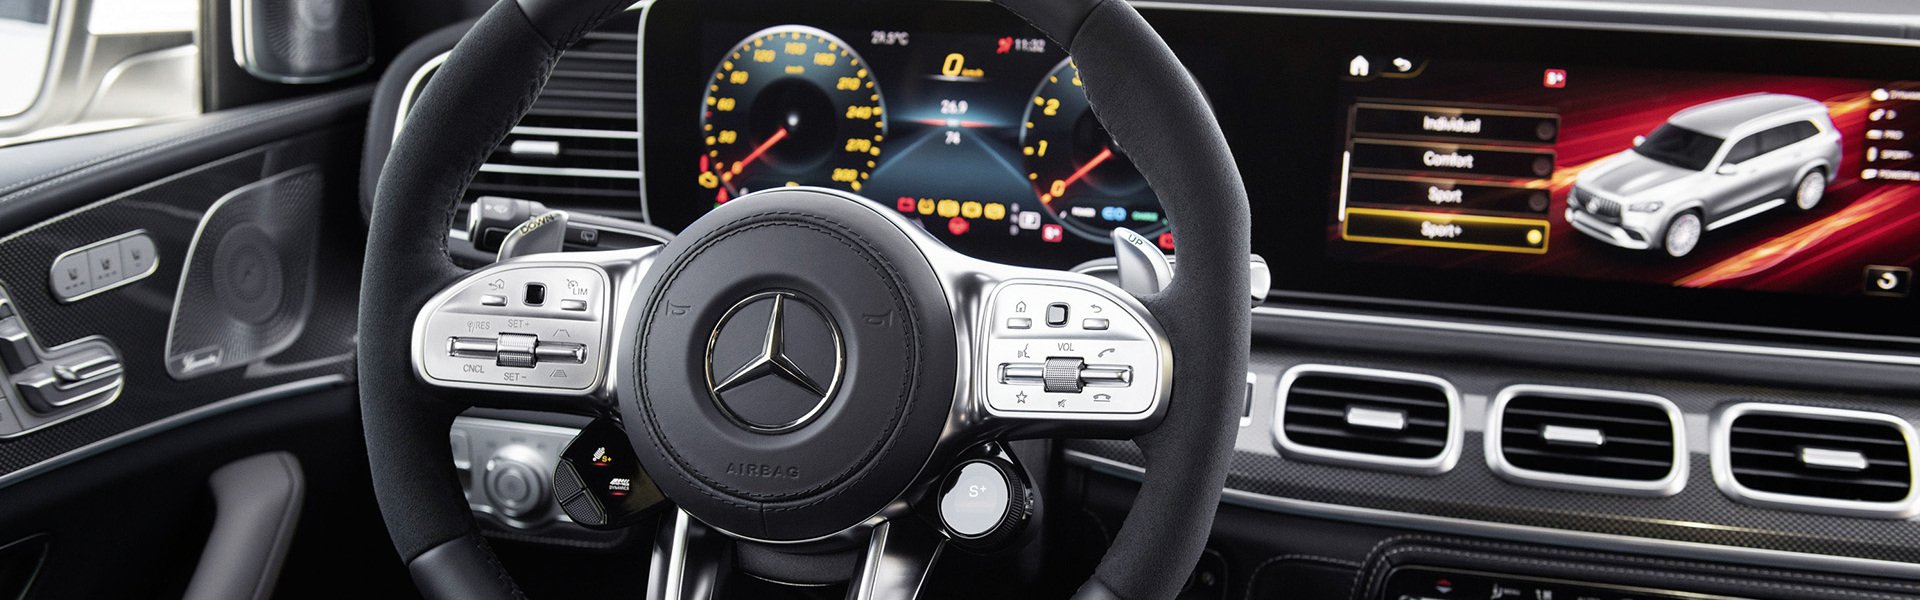 Mercedes-AMG GLS внедорожник